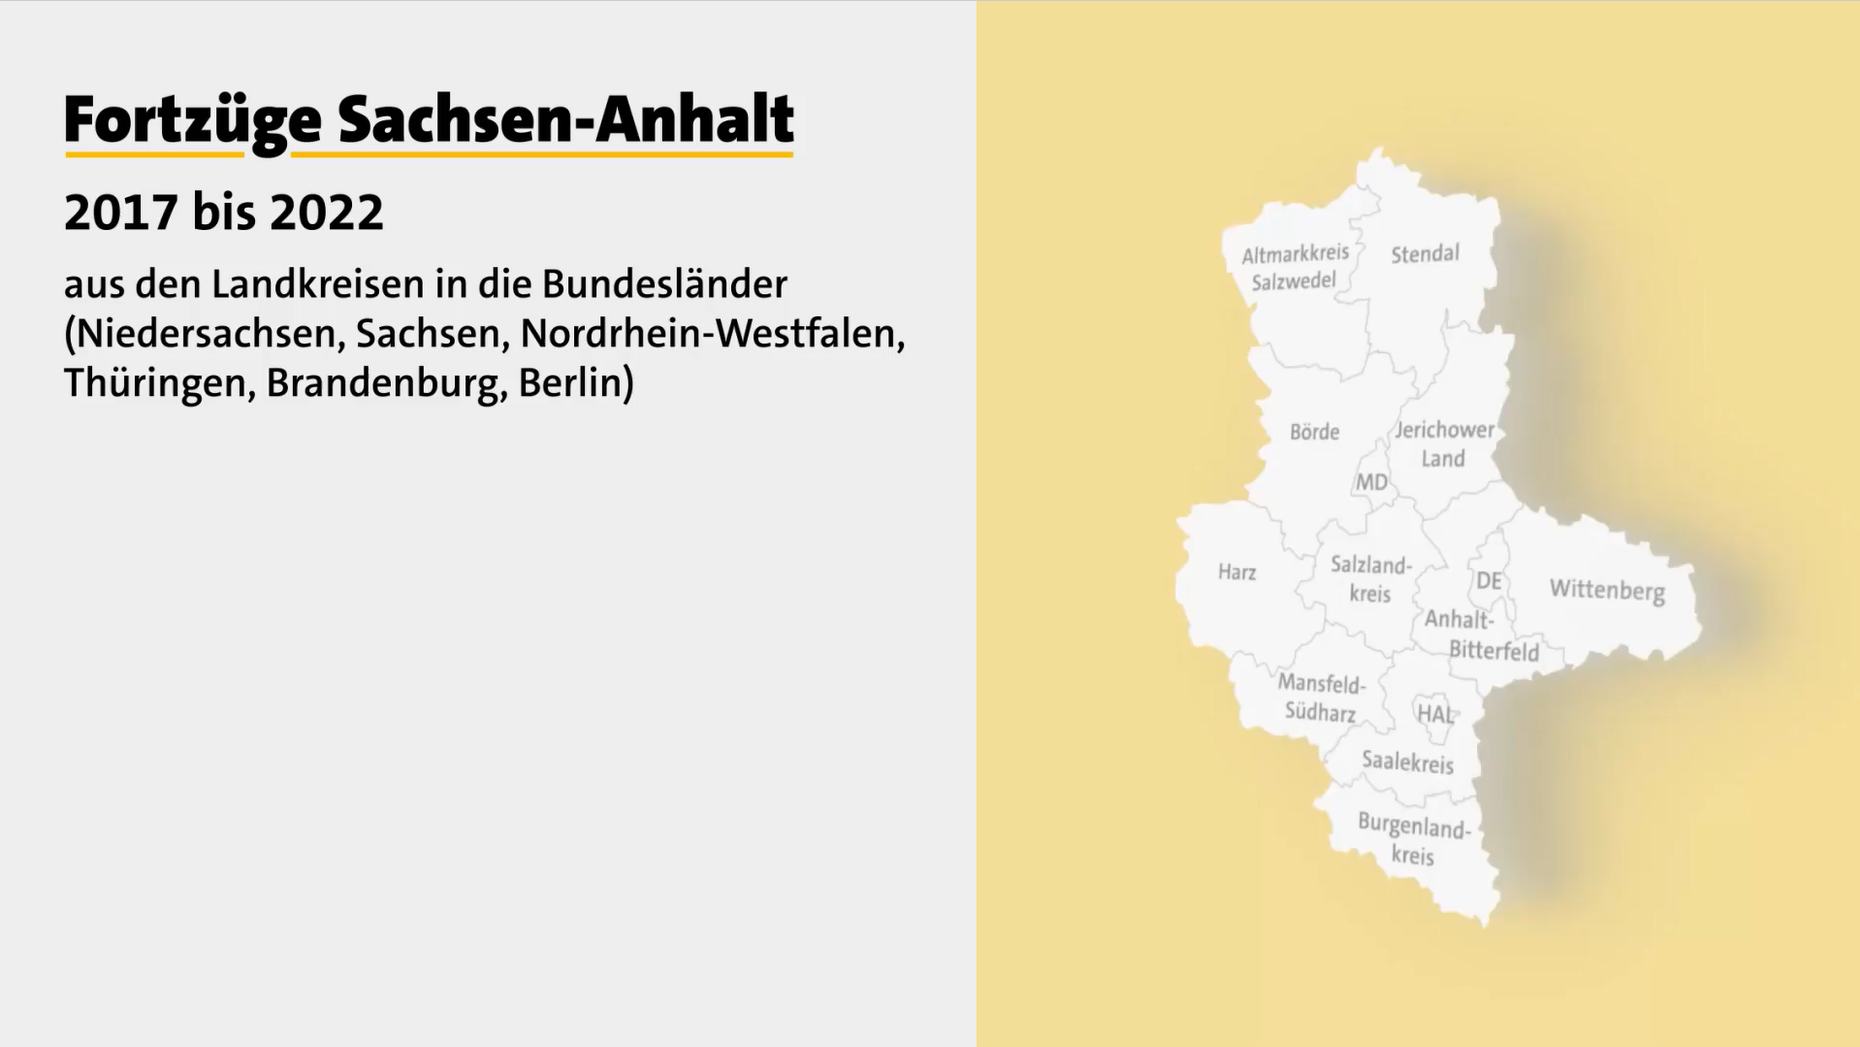 Startbild des Videos zu Fortzügen Sachsen-Anhalt 2017 bis 2022